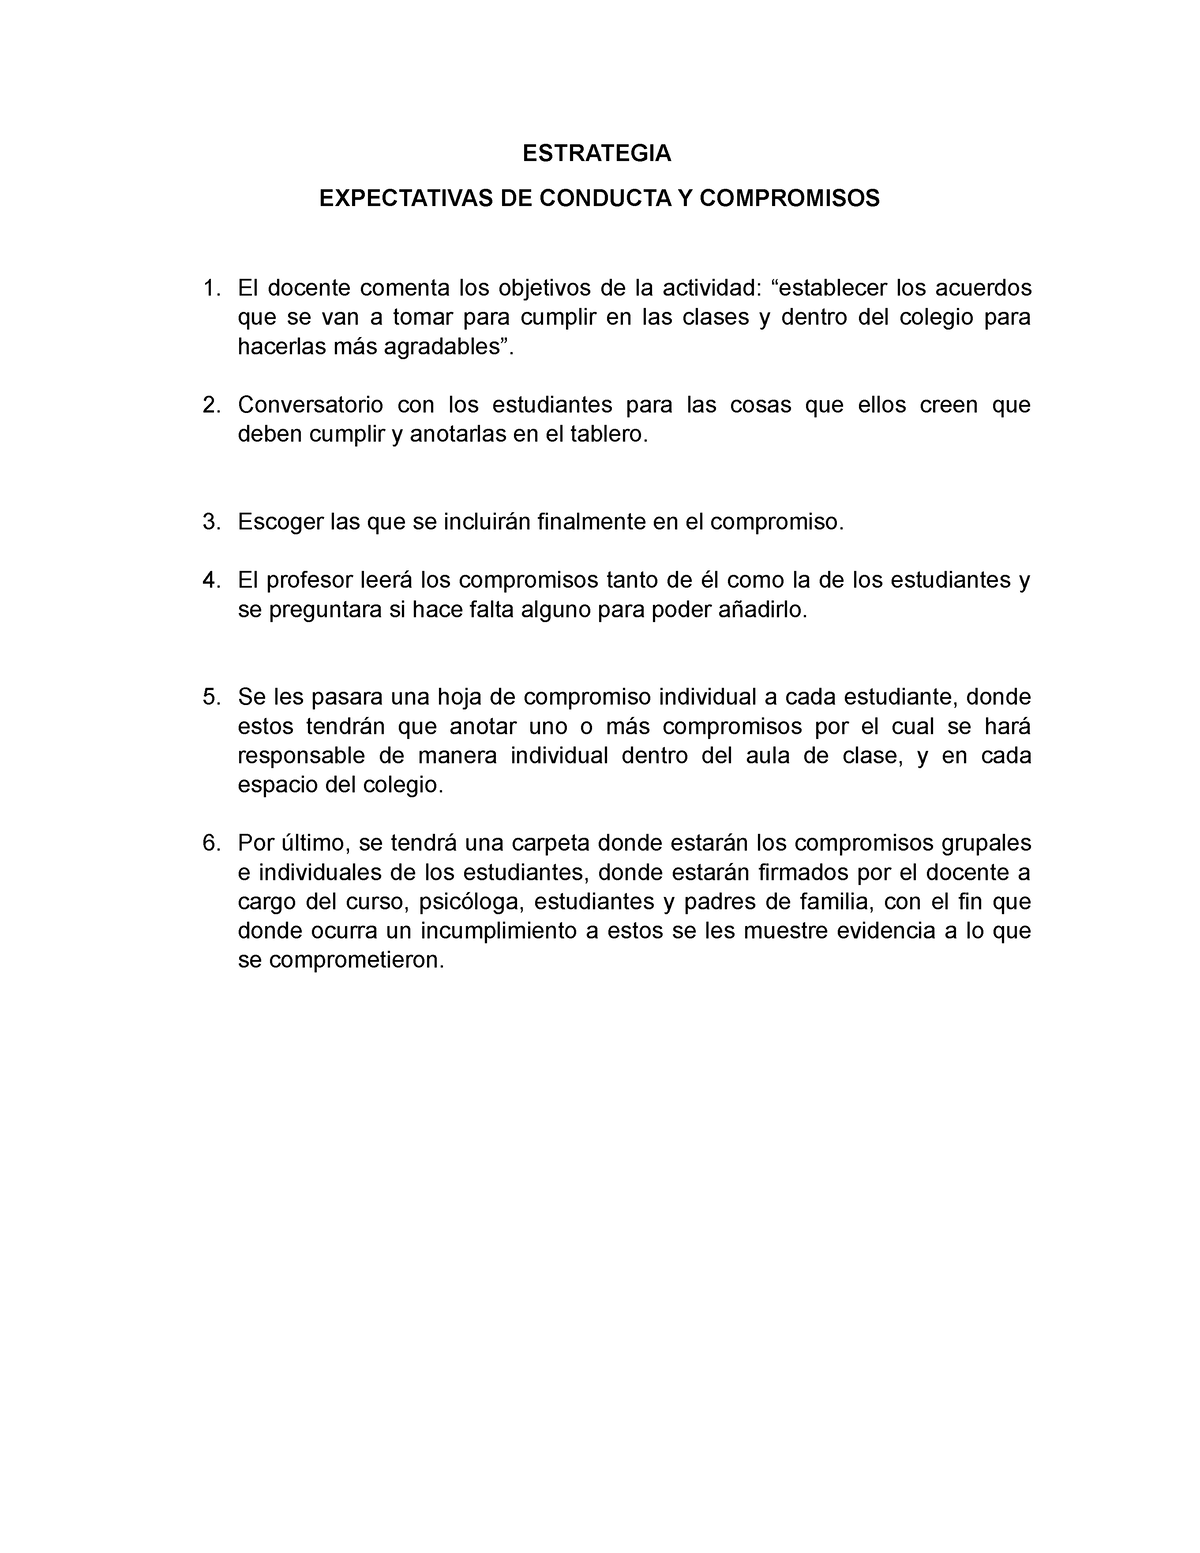 Compromisos 9 ESTRATEGIA EXPECTATIVAS DE CONDUCTA Y COMPROMISOS El